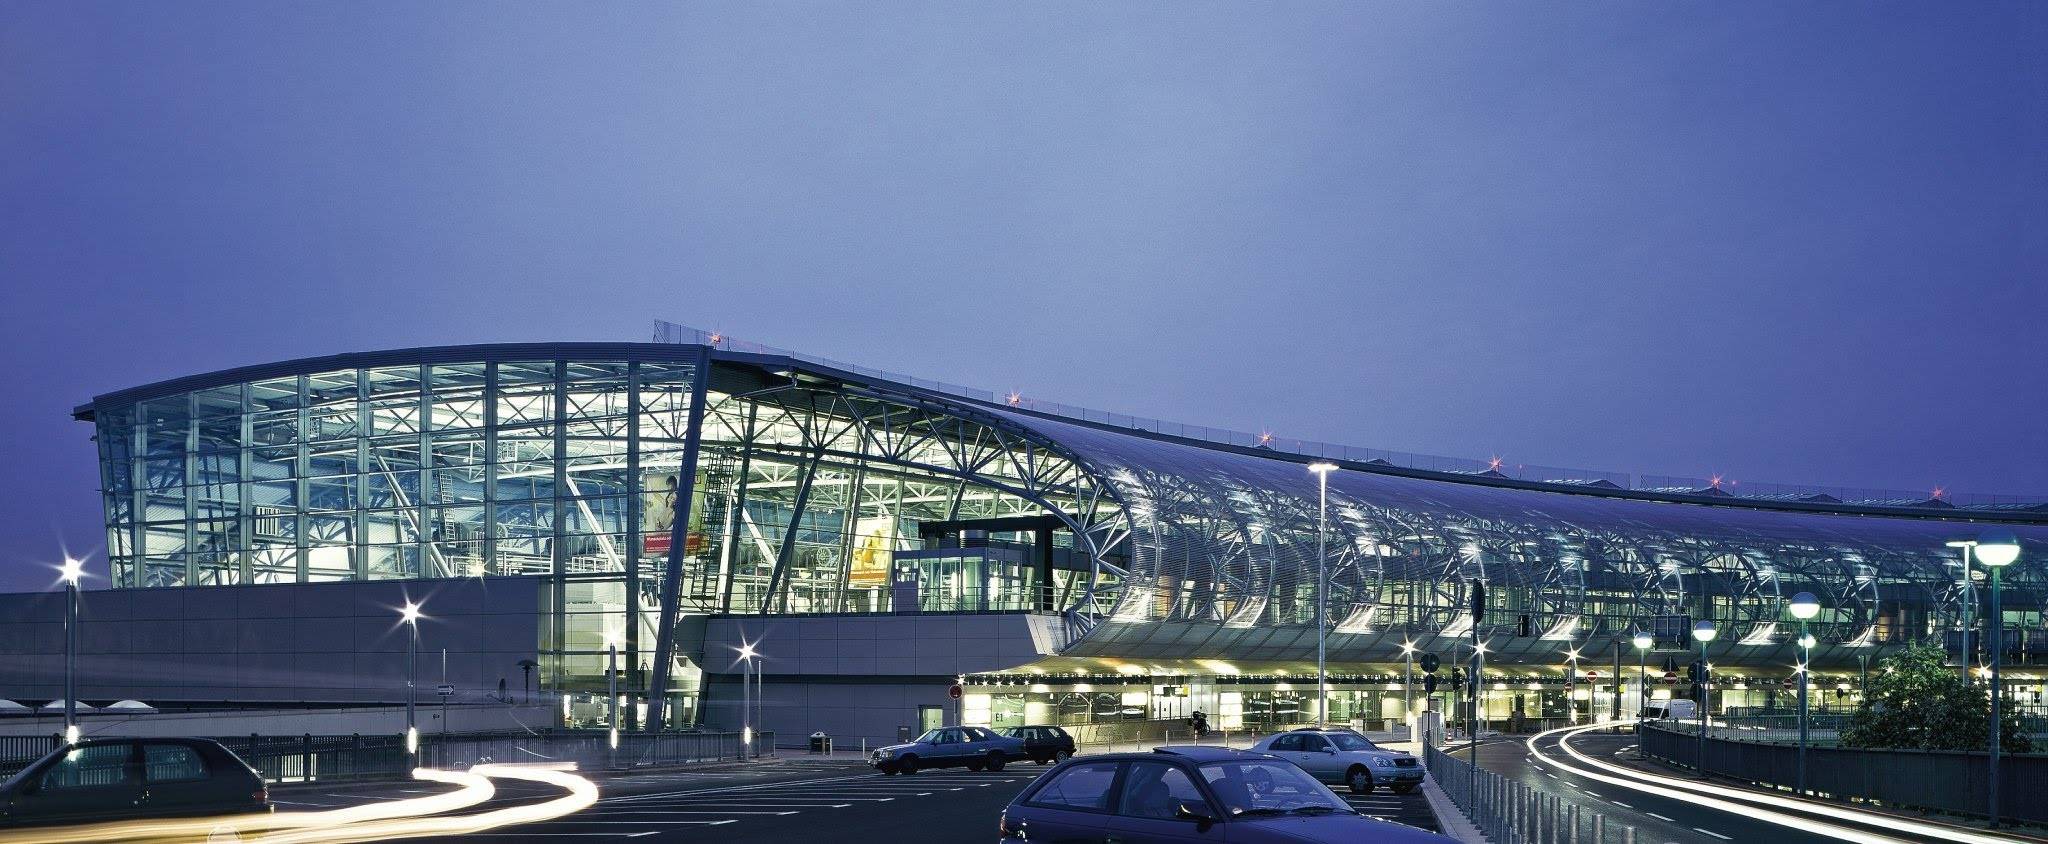 Аэропорт дюссельдорф: онлайн табло вылета и прилета, схема терминалов и как добраться